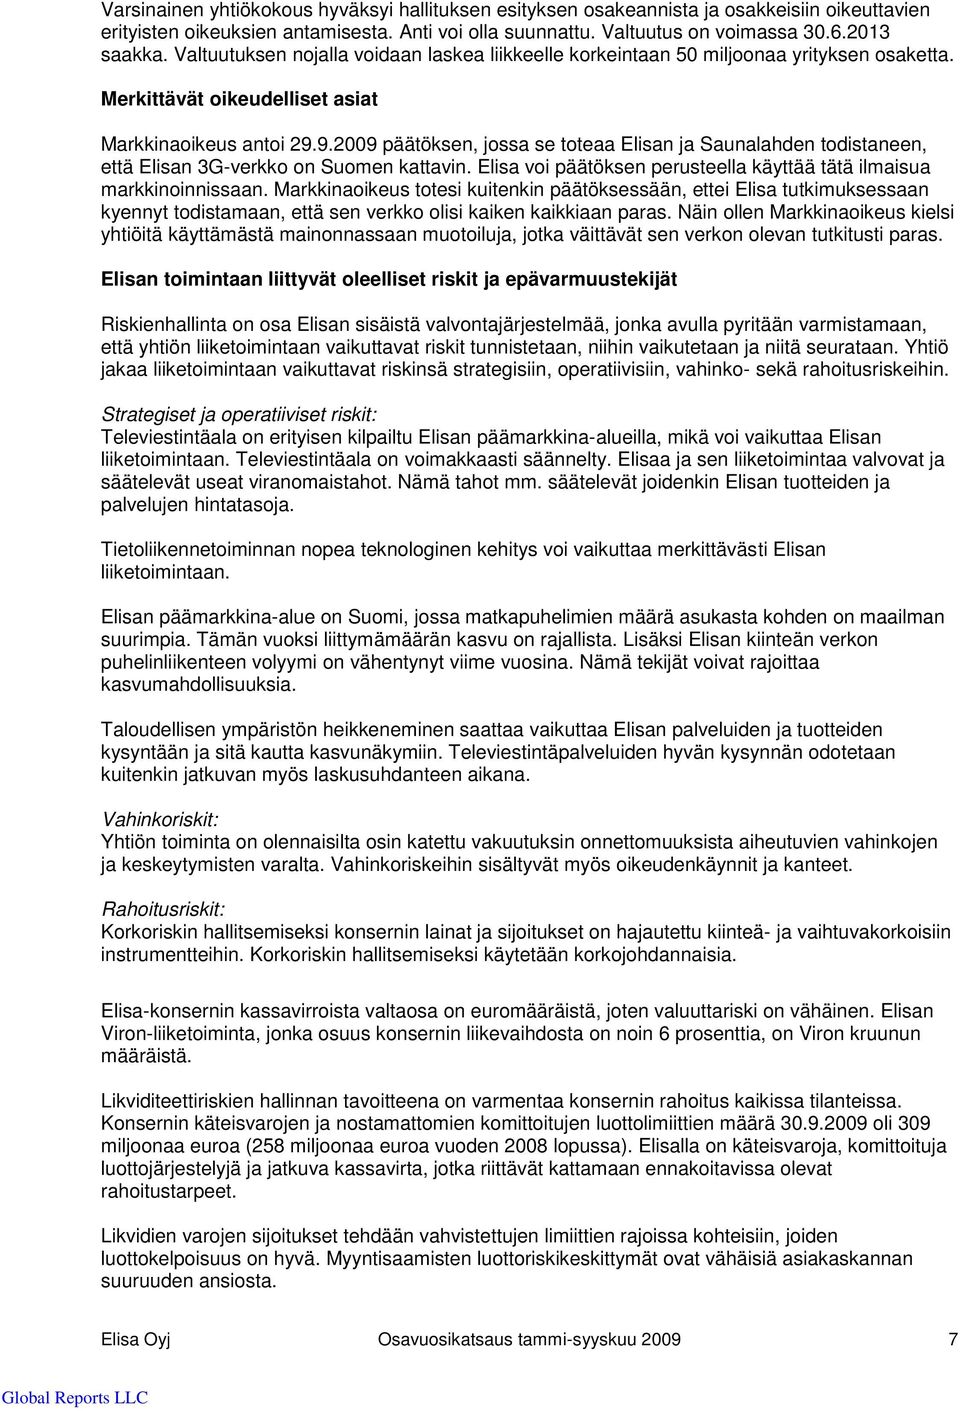 9.2009 päätöksen, jossa se toteaa Elisan ja Saunalahden todistaneen, että Elisan 3G-verkko on Suomen kattavin. Elisa voi päätöksen perusteella käyttää tätä ilmaisua markkinoinnissaan.